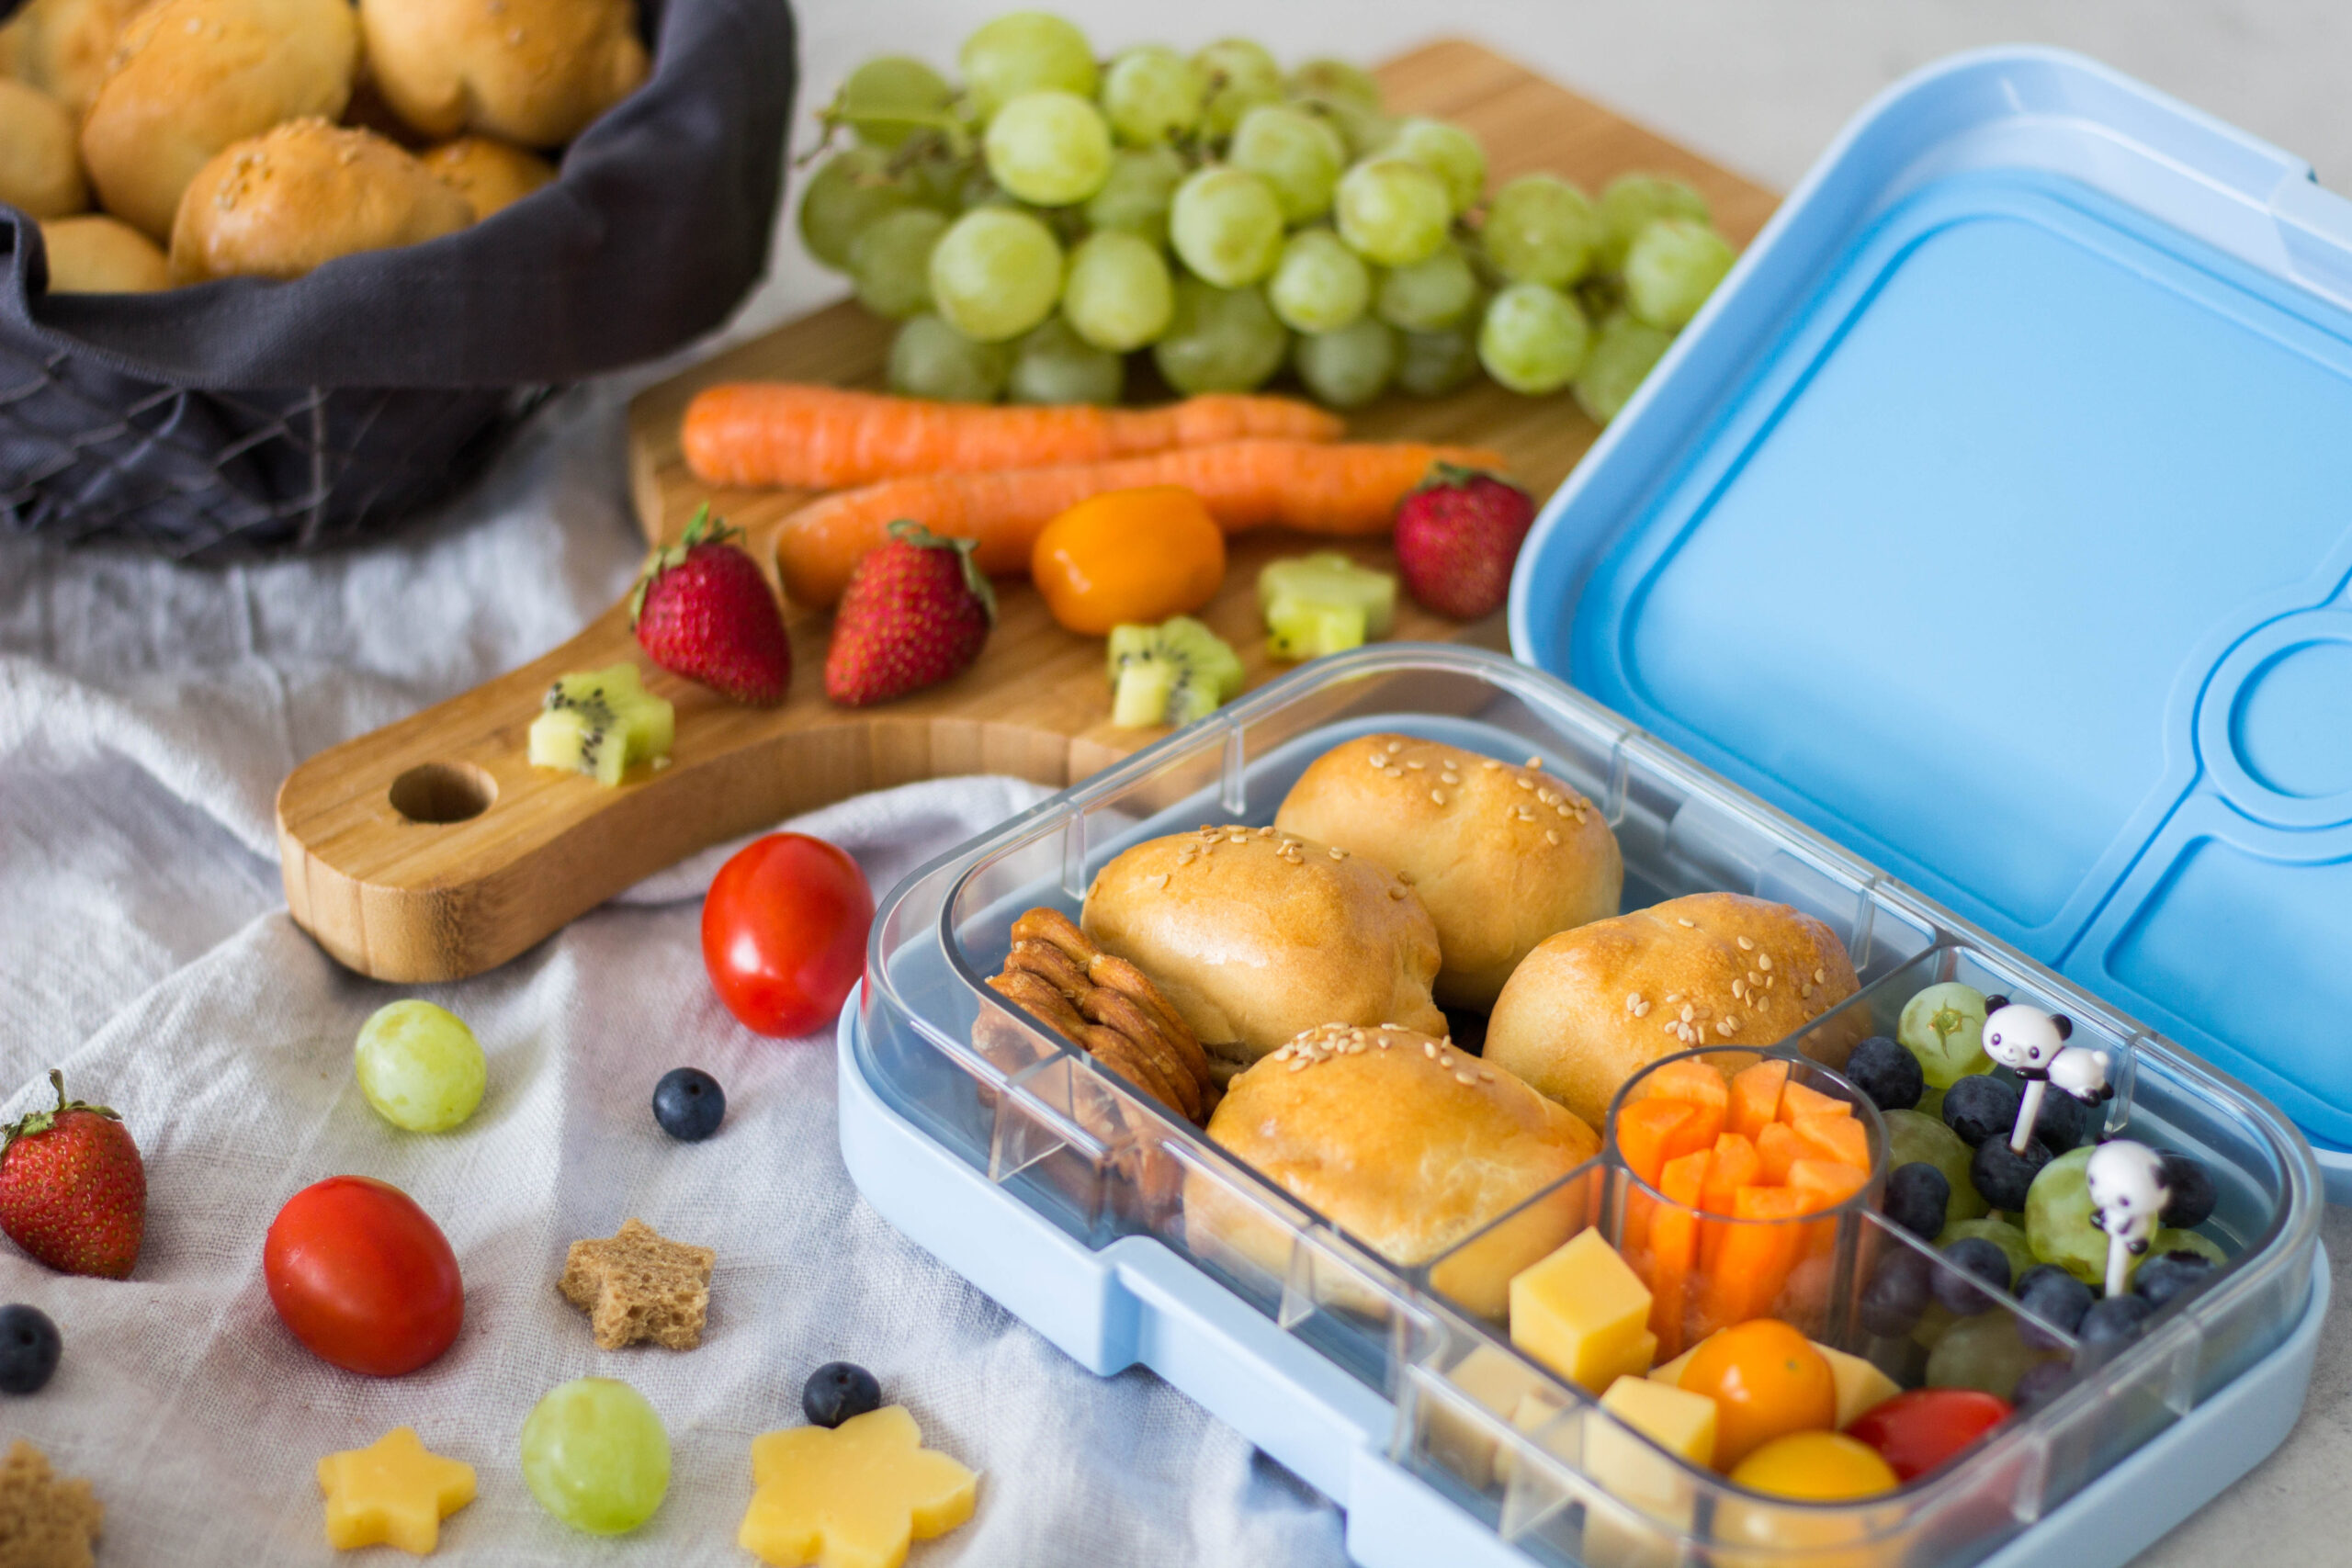 Snackbox Ideen für Kinder - Freche Freunde